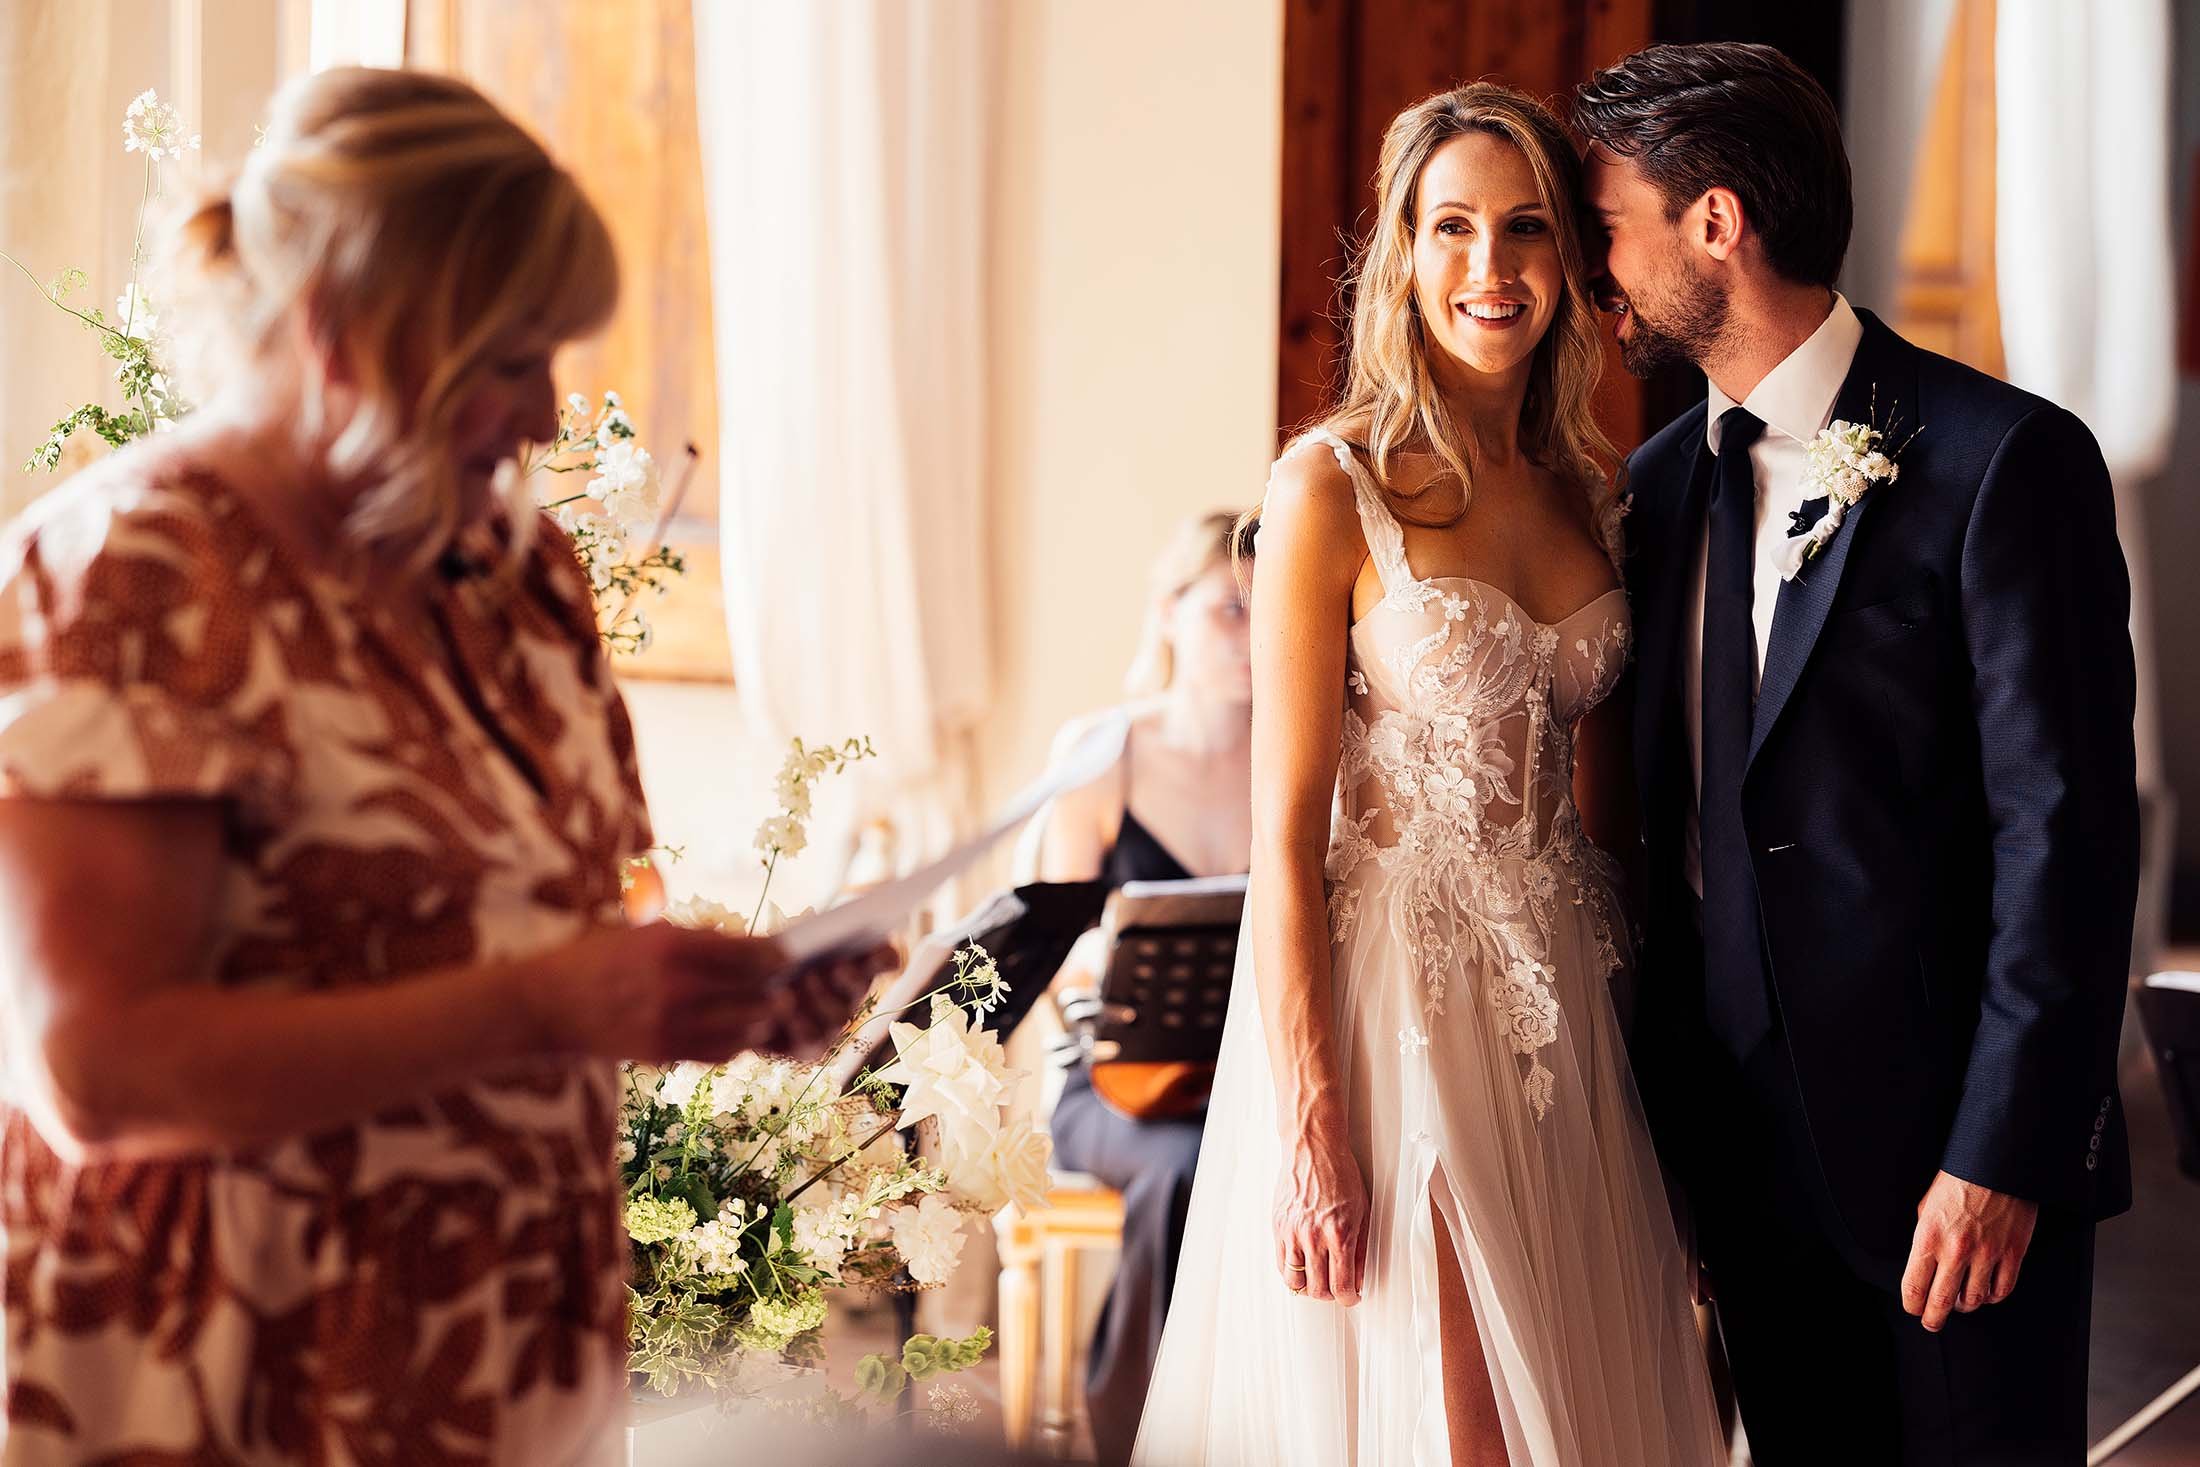 couple share moment during italian wedding ceremony in villa di ulignano ballroom